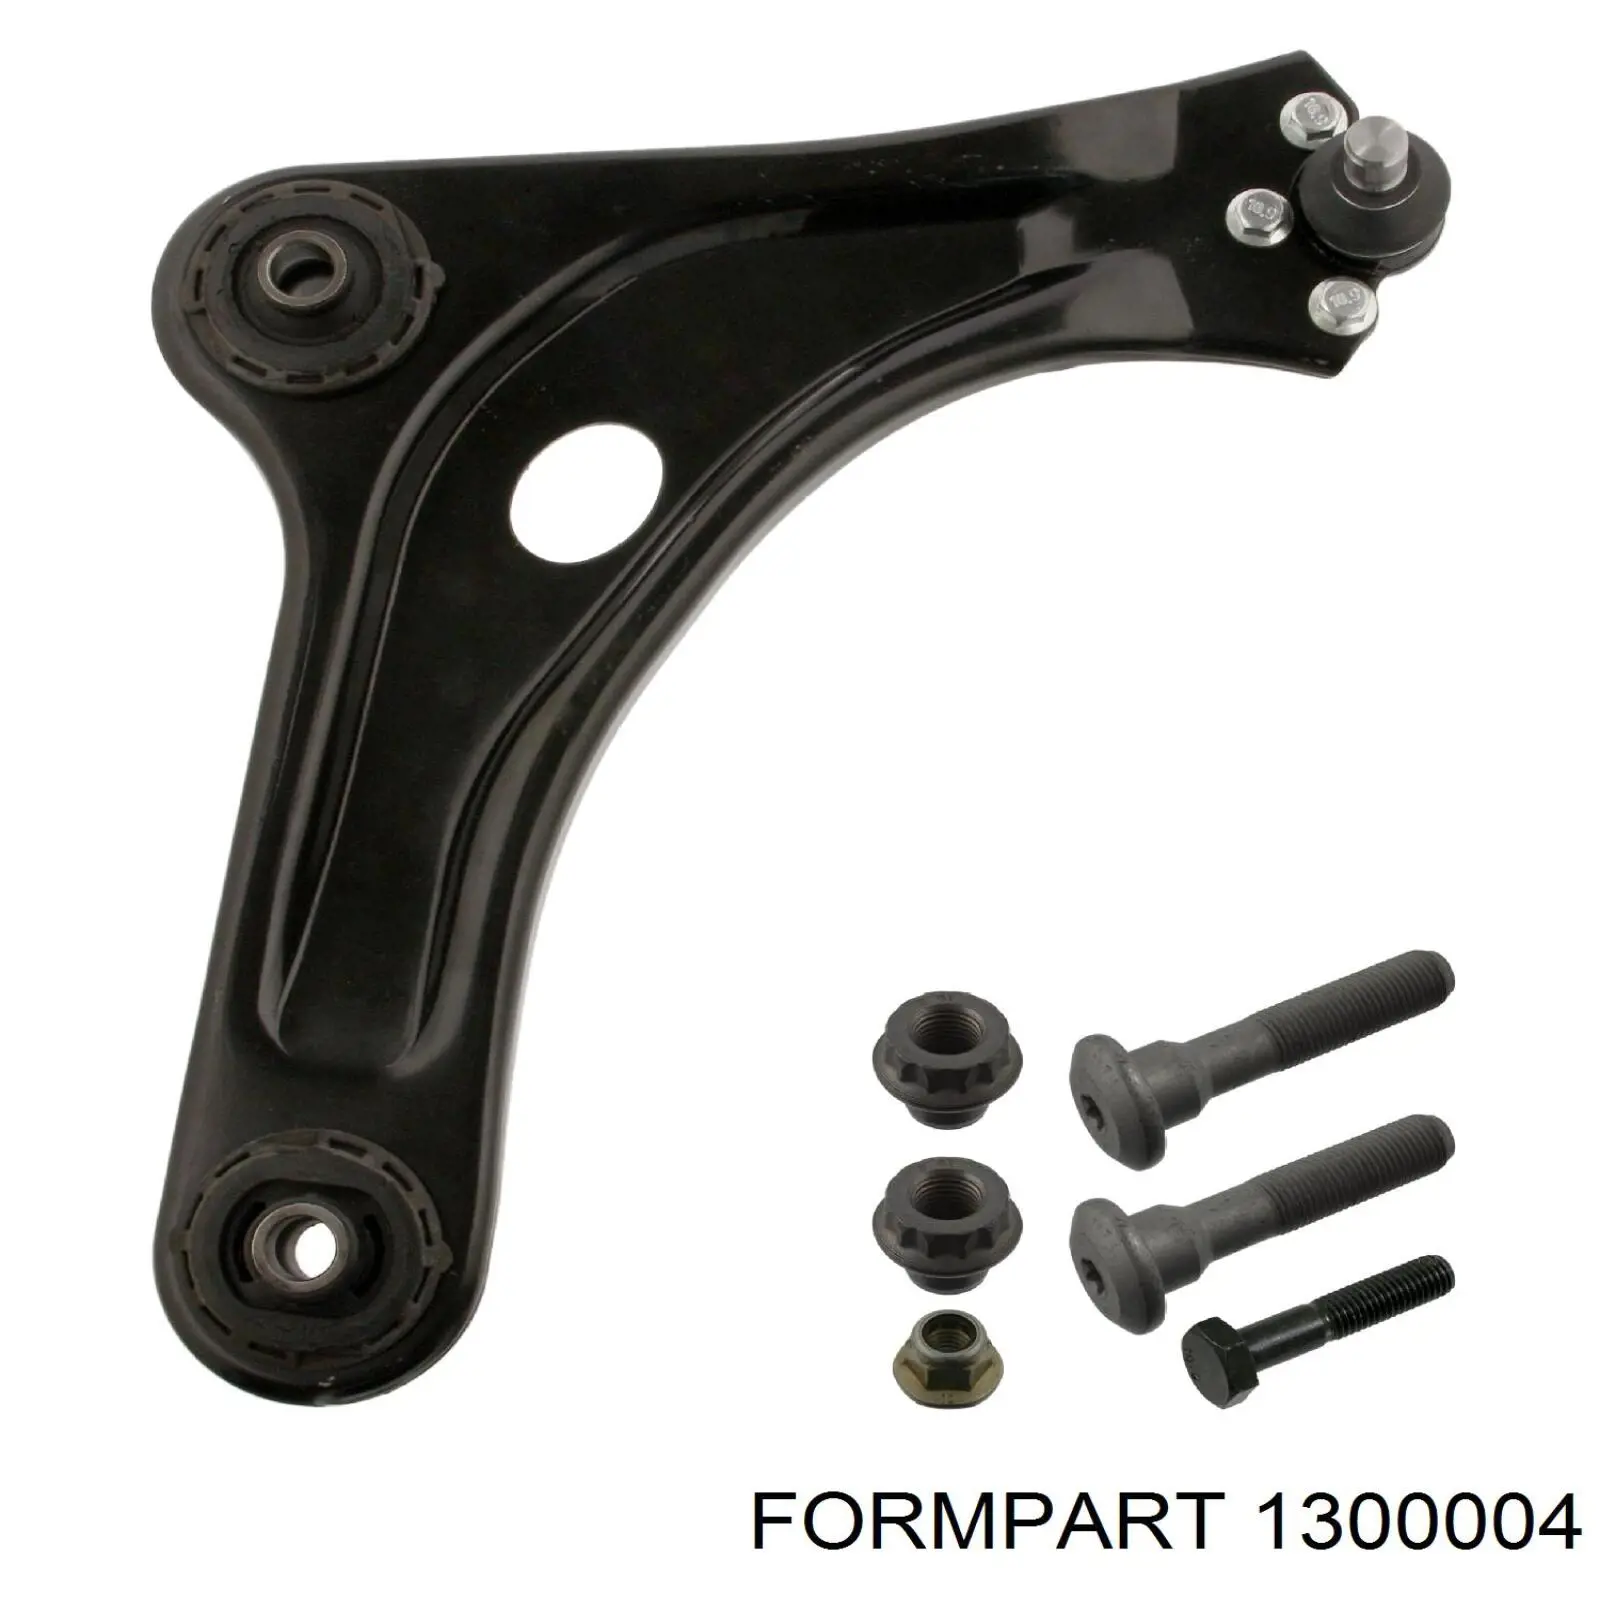 1300004 Formpart/Otoform silentblock de suspensión delantero inferior